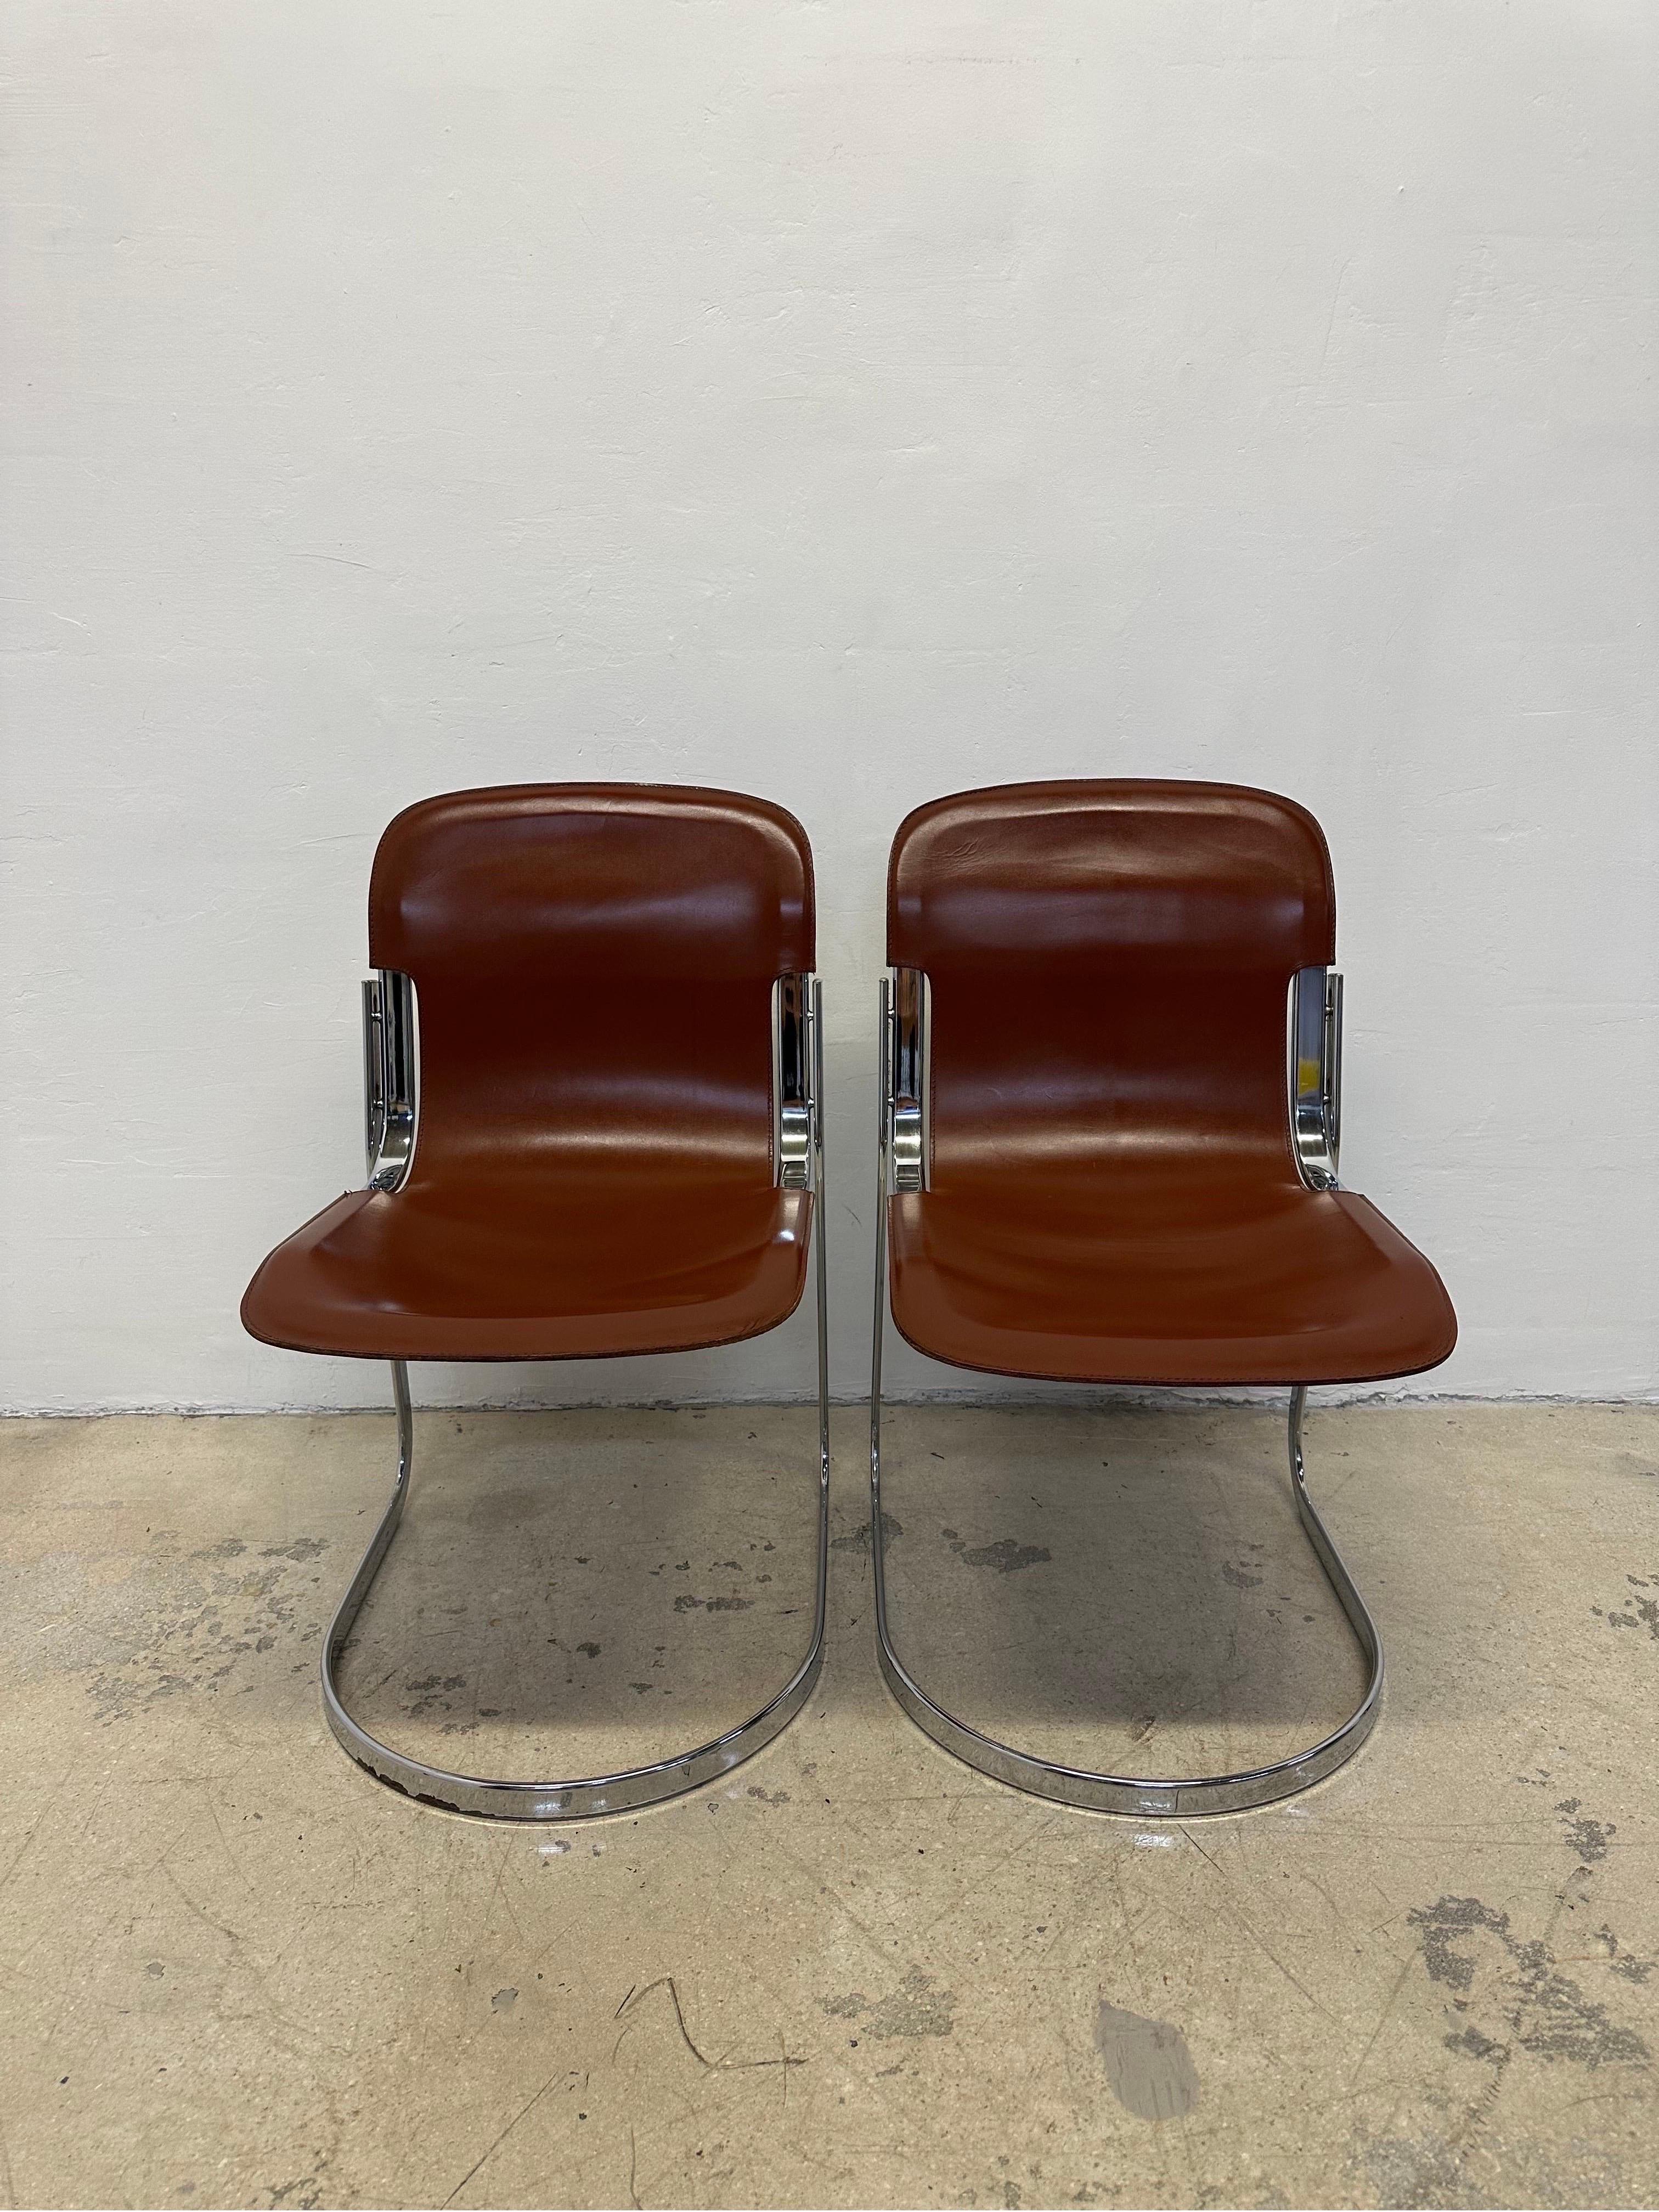 C2 chaises de salle à manger ou d'appoint en cuir et chrome conçues par Willy Rizzo pour Cidue, Italie, années 1970.

Prix à l'unité 